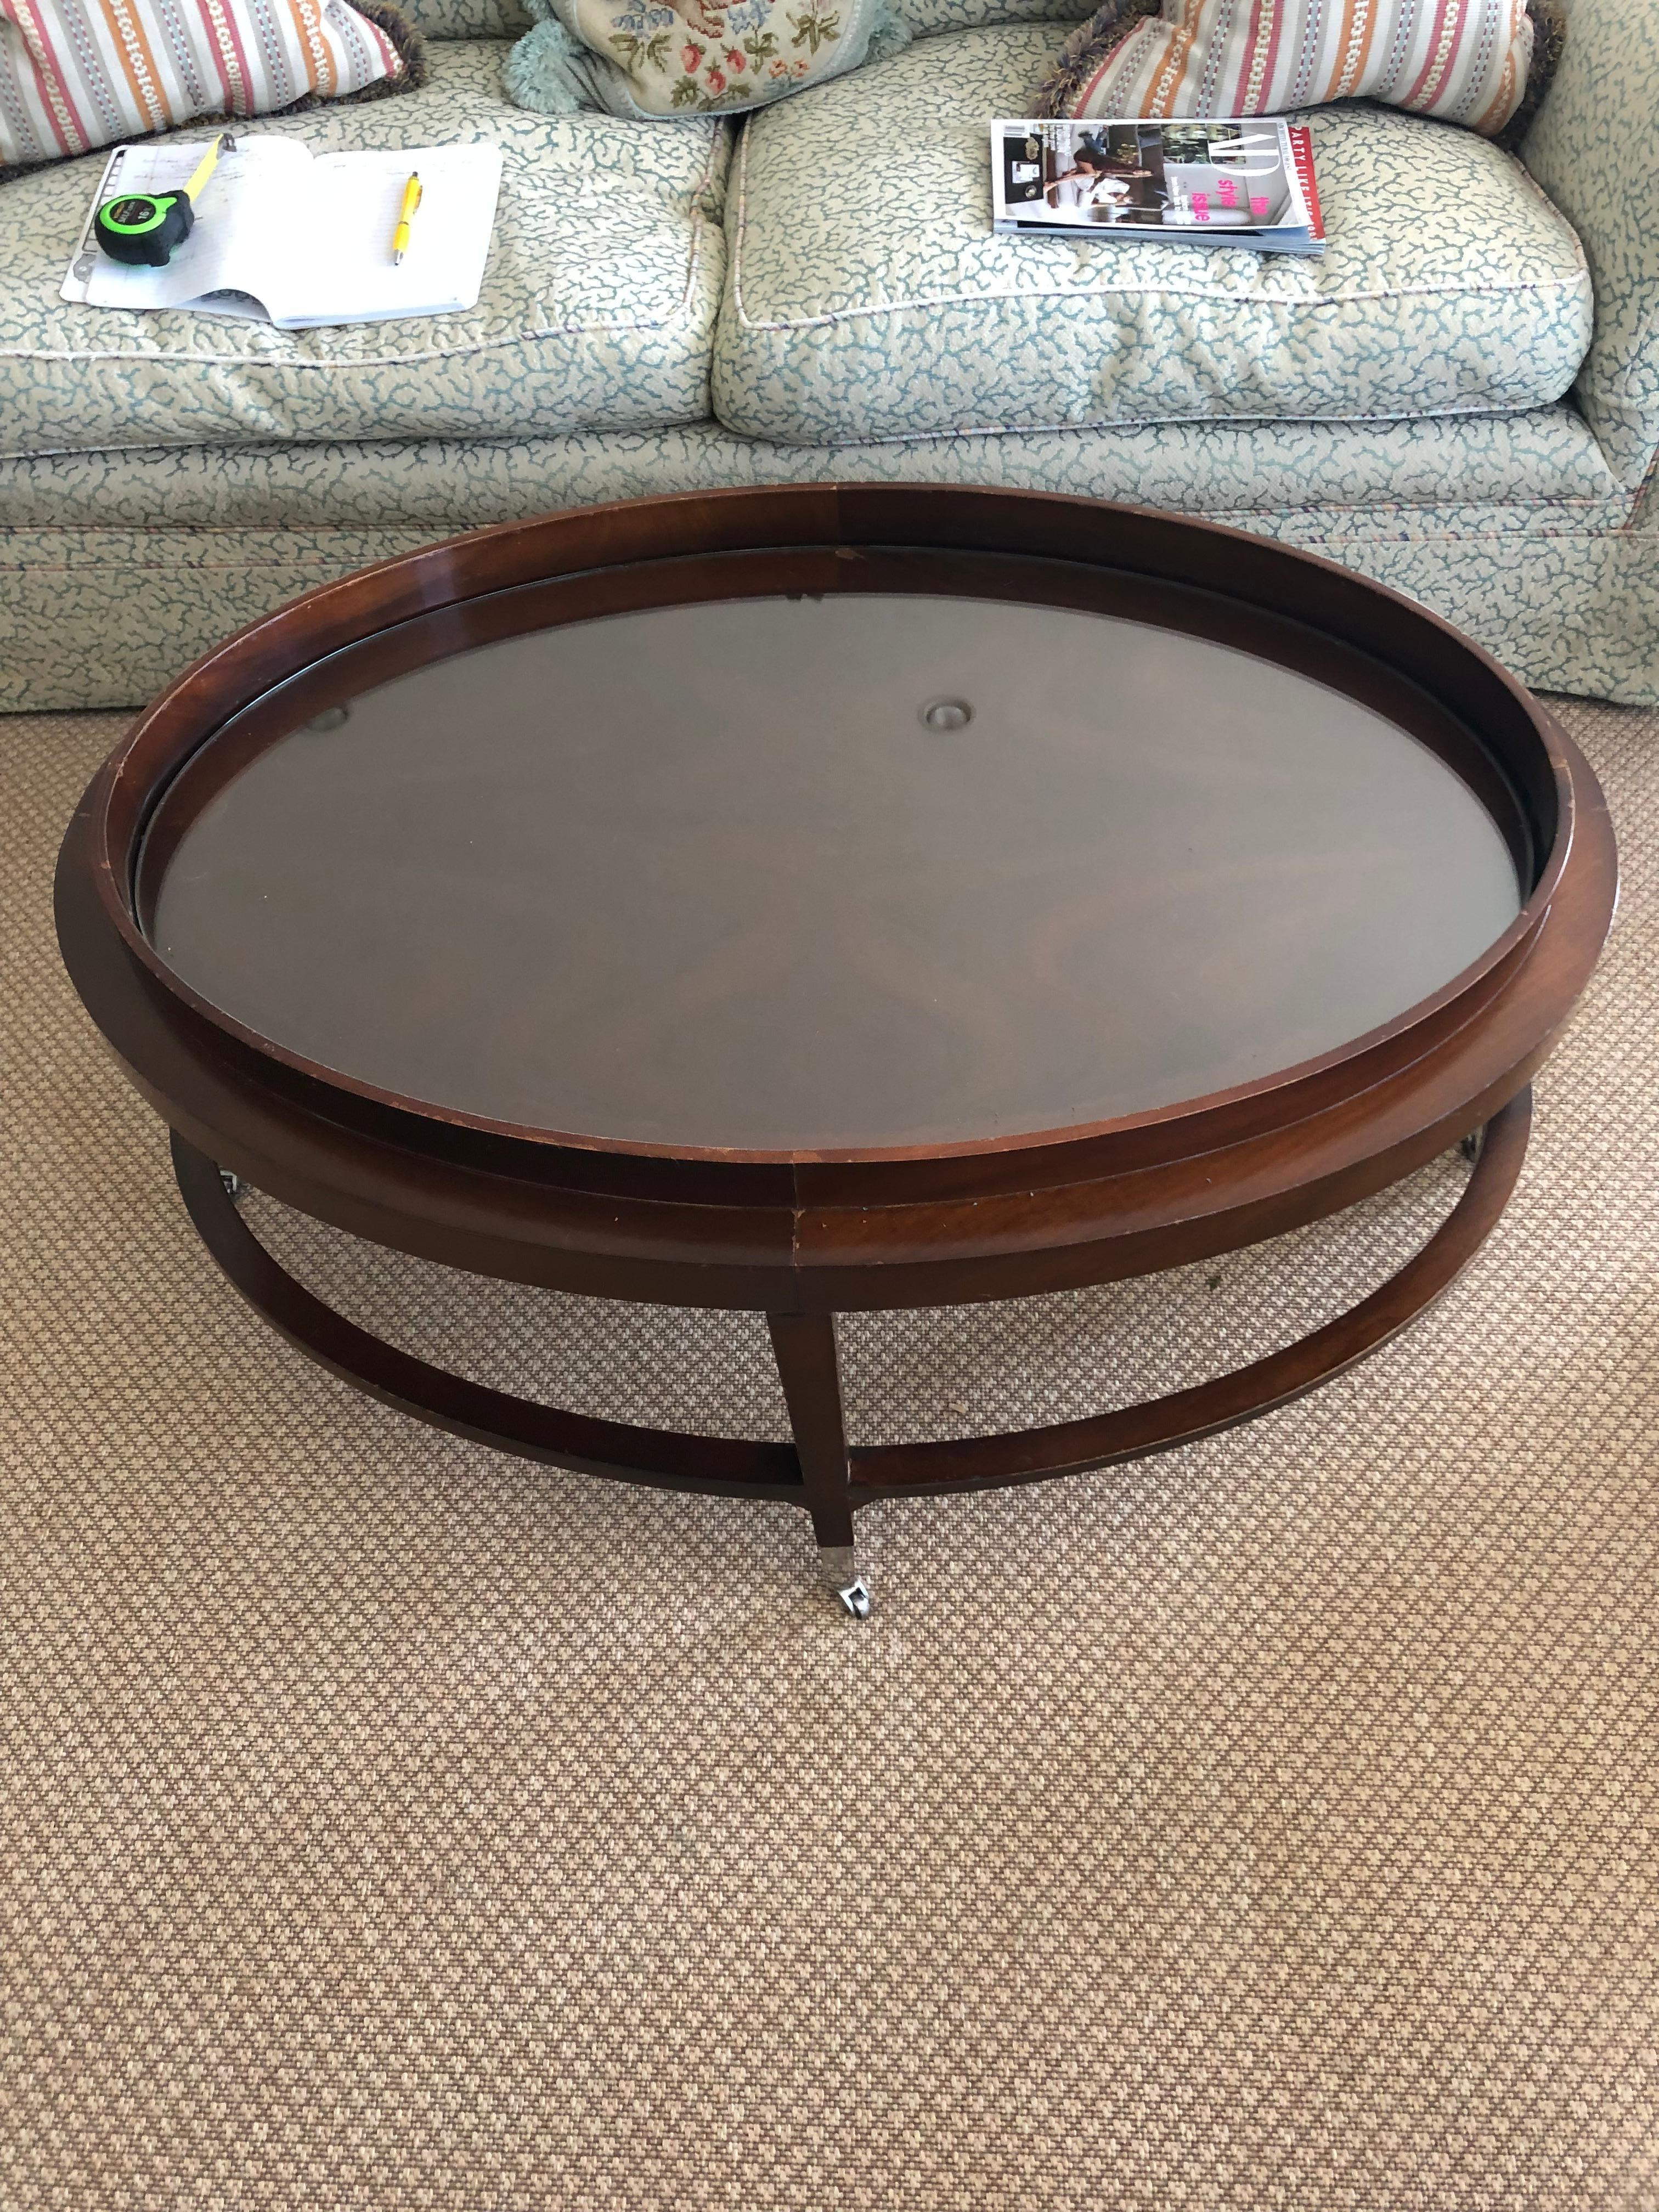 Une table basse ovale de grande taille avec un insert en verre dans une table en acajou terminée par des roulettes en nickel.